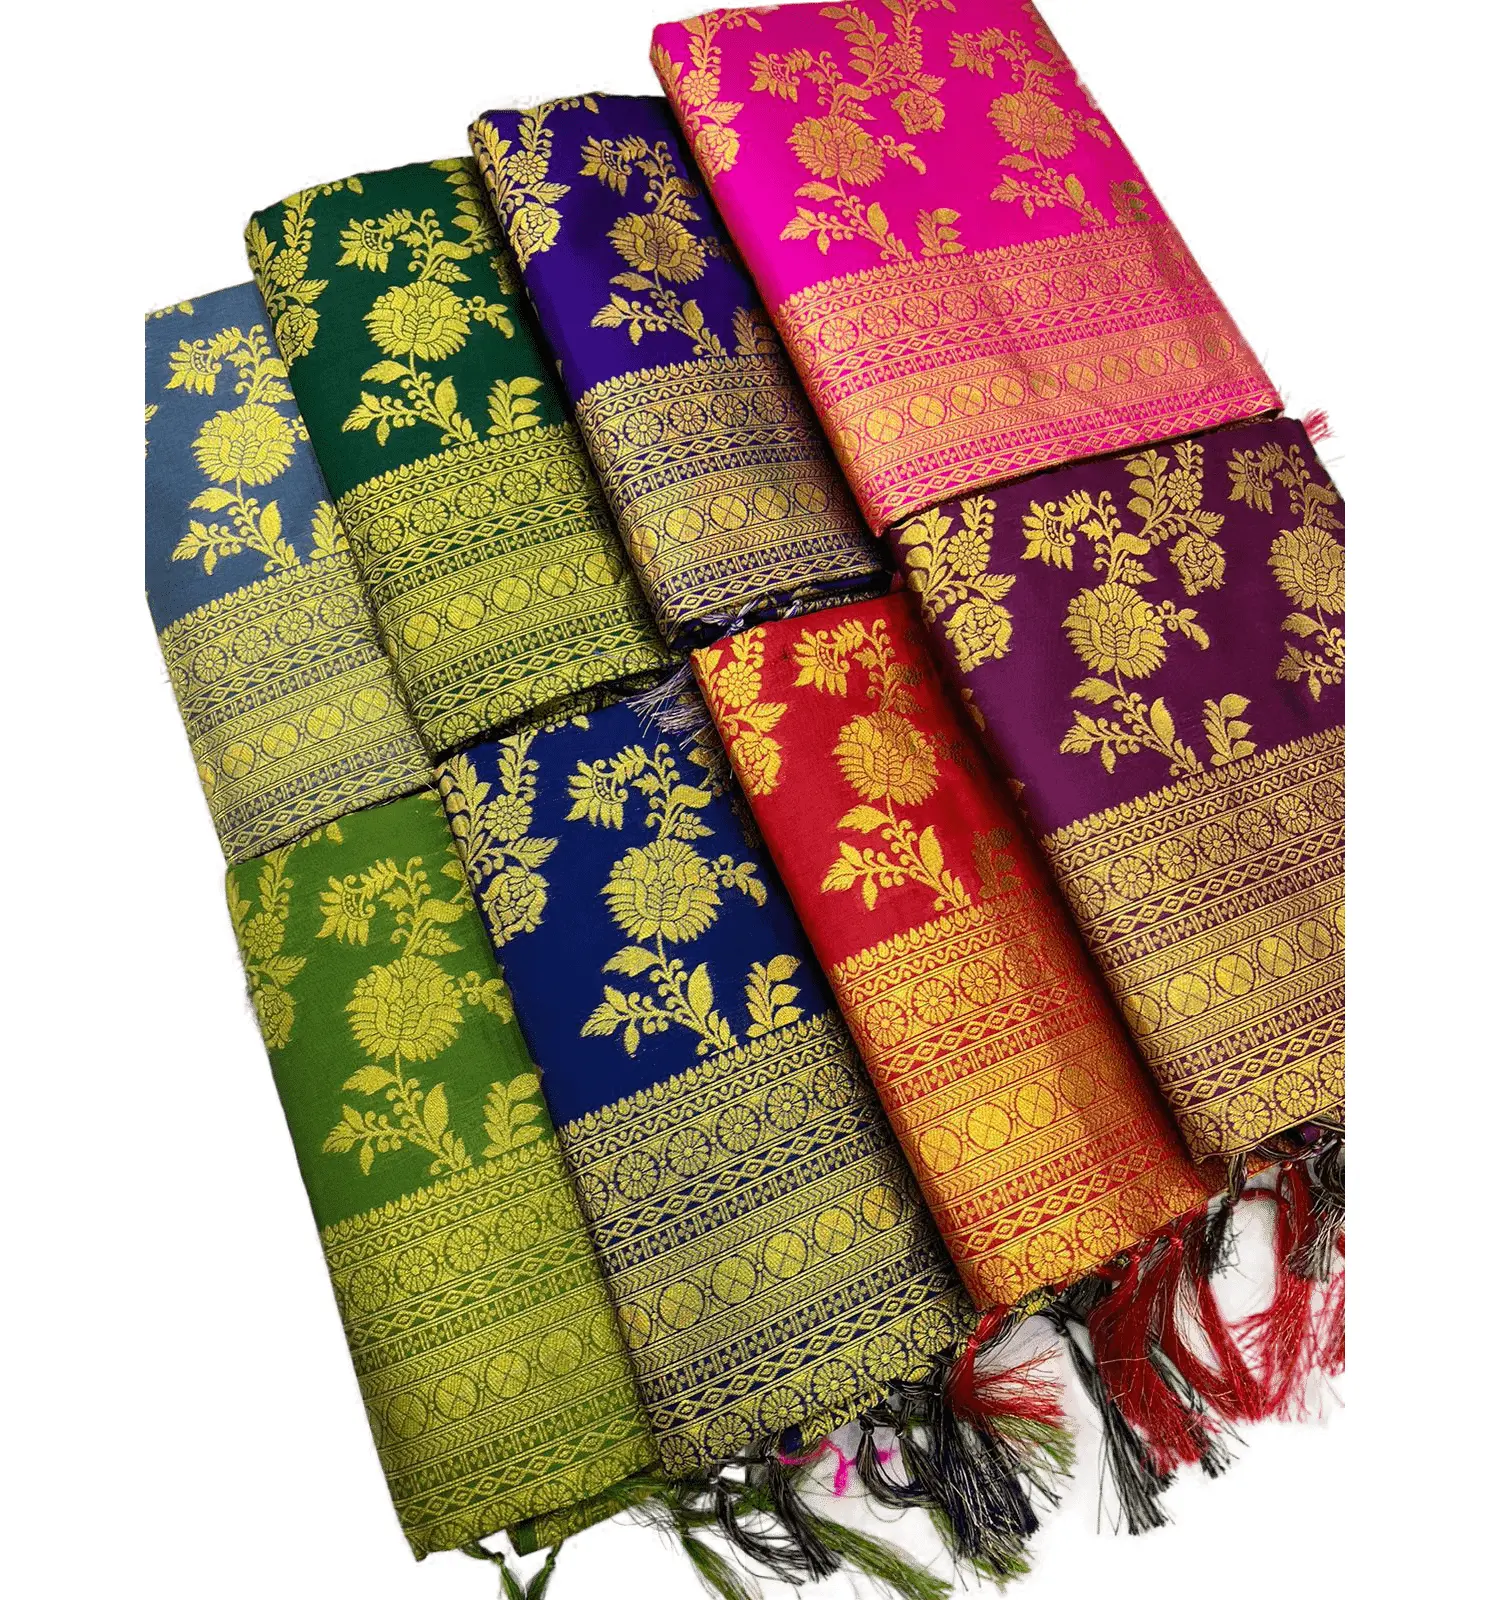 ชุดส่าหรีผ้าไหมอินเดียใต้,ผ้าแพรรีสีทองบริสุทธิ์งานทอผ้าอารีย์พร้อมเสื้อปัก